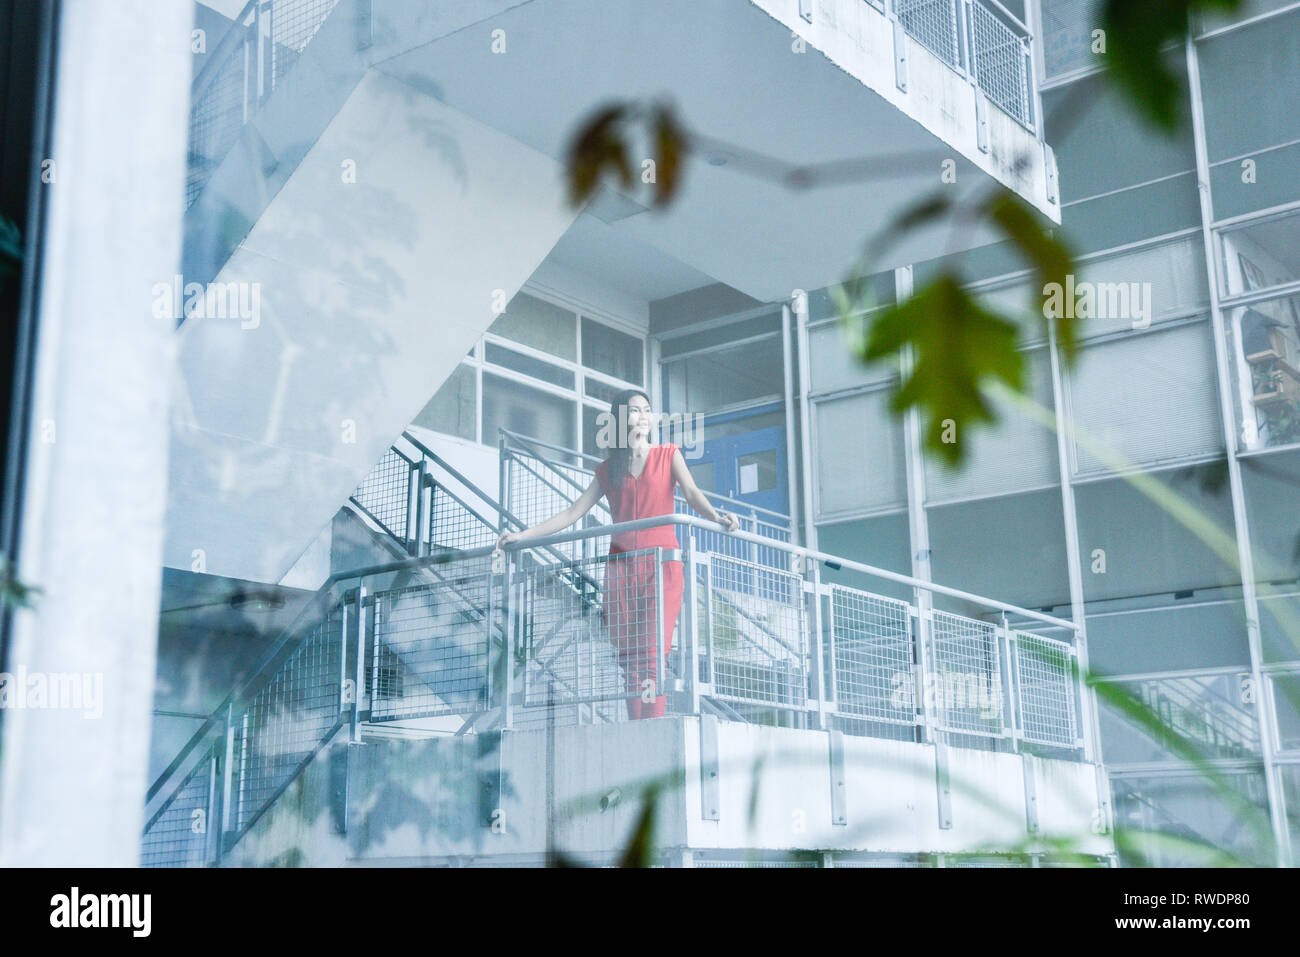 Eine schöne asiatische Mädchen in einem Sexy Red jumpsuit steht auf einem Hochhaus Treppenhaus mit Windows und Büros im Hintergrund - Sie sieht glücklich aus und städtischen Stockfoto